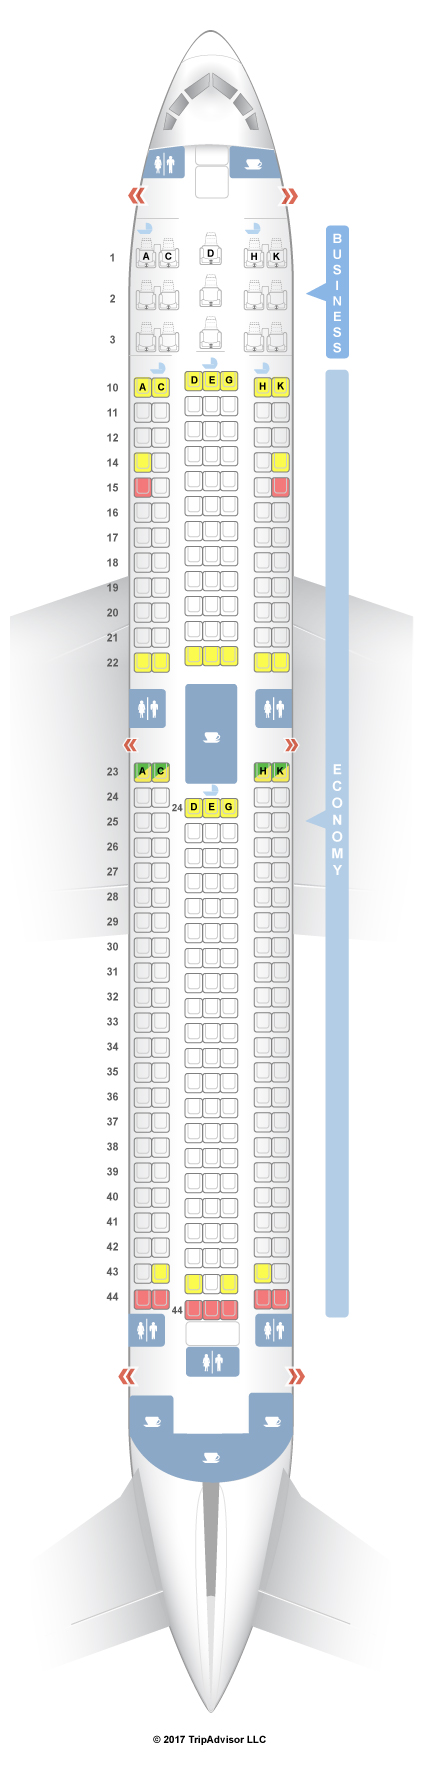 Aircraft 763 Seating Chart